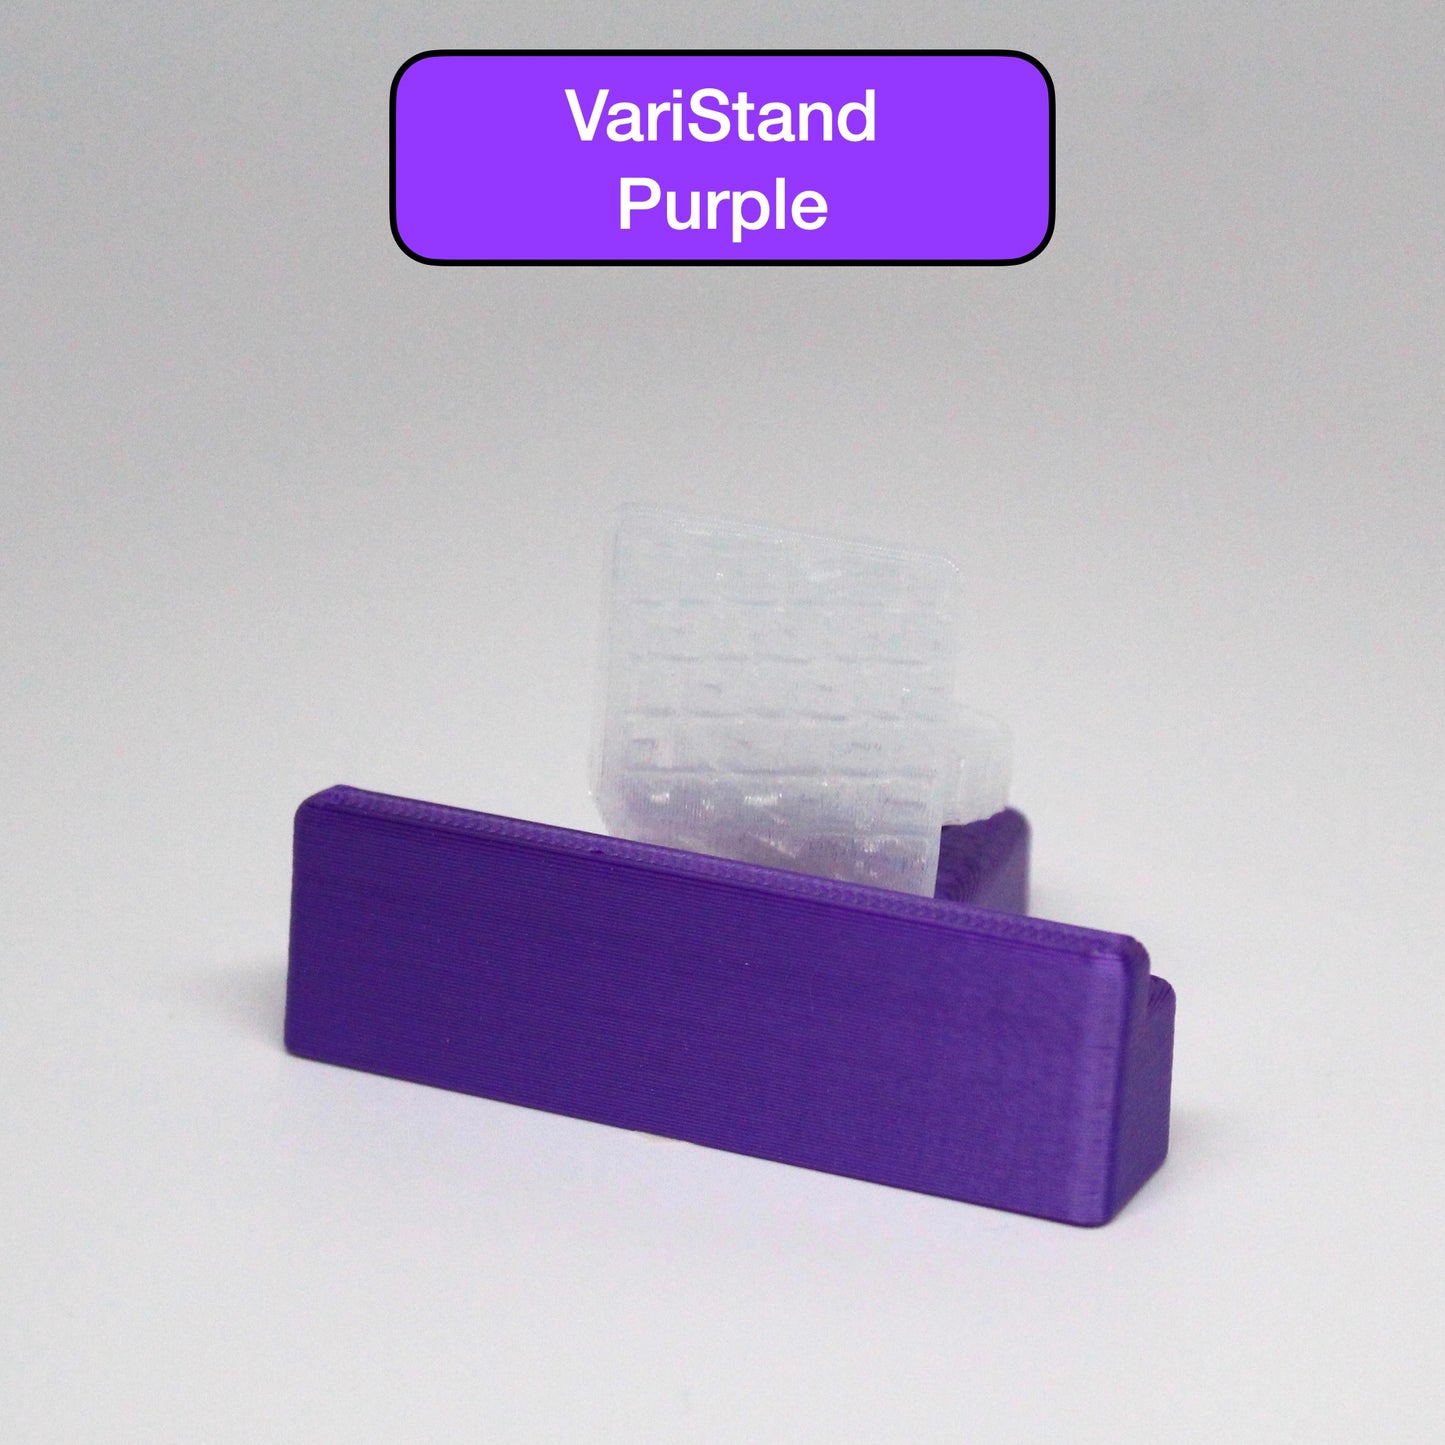 The Adjustable VariStand - Purple